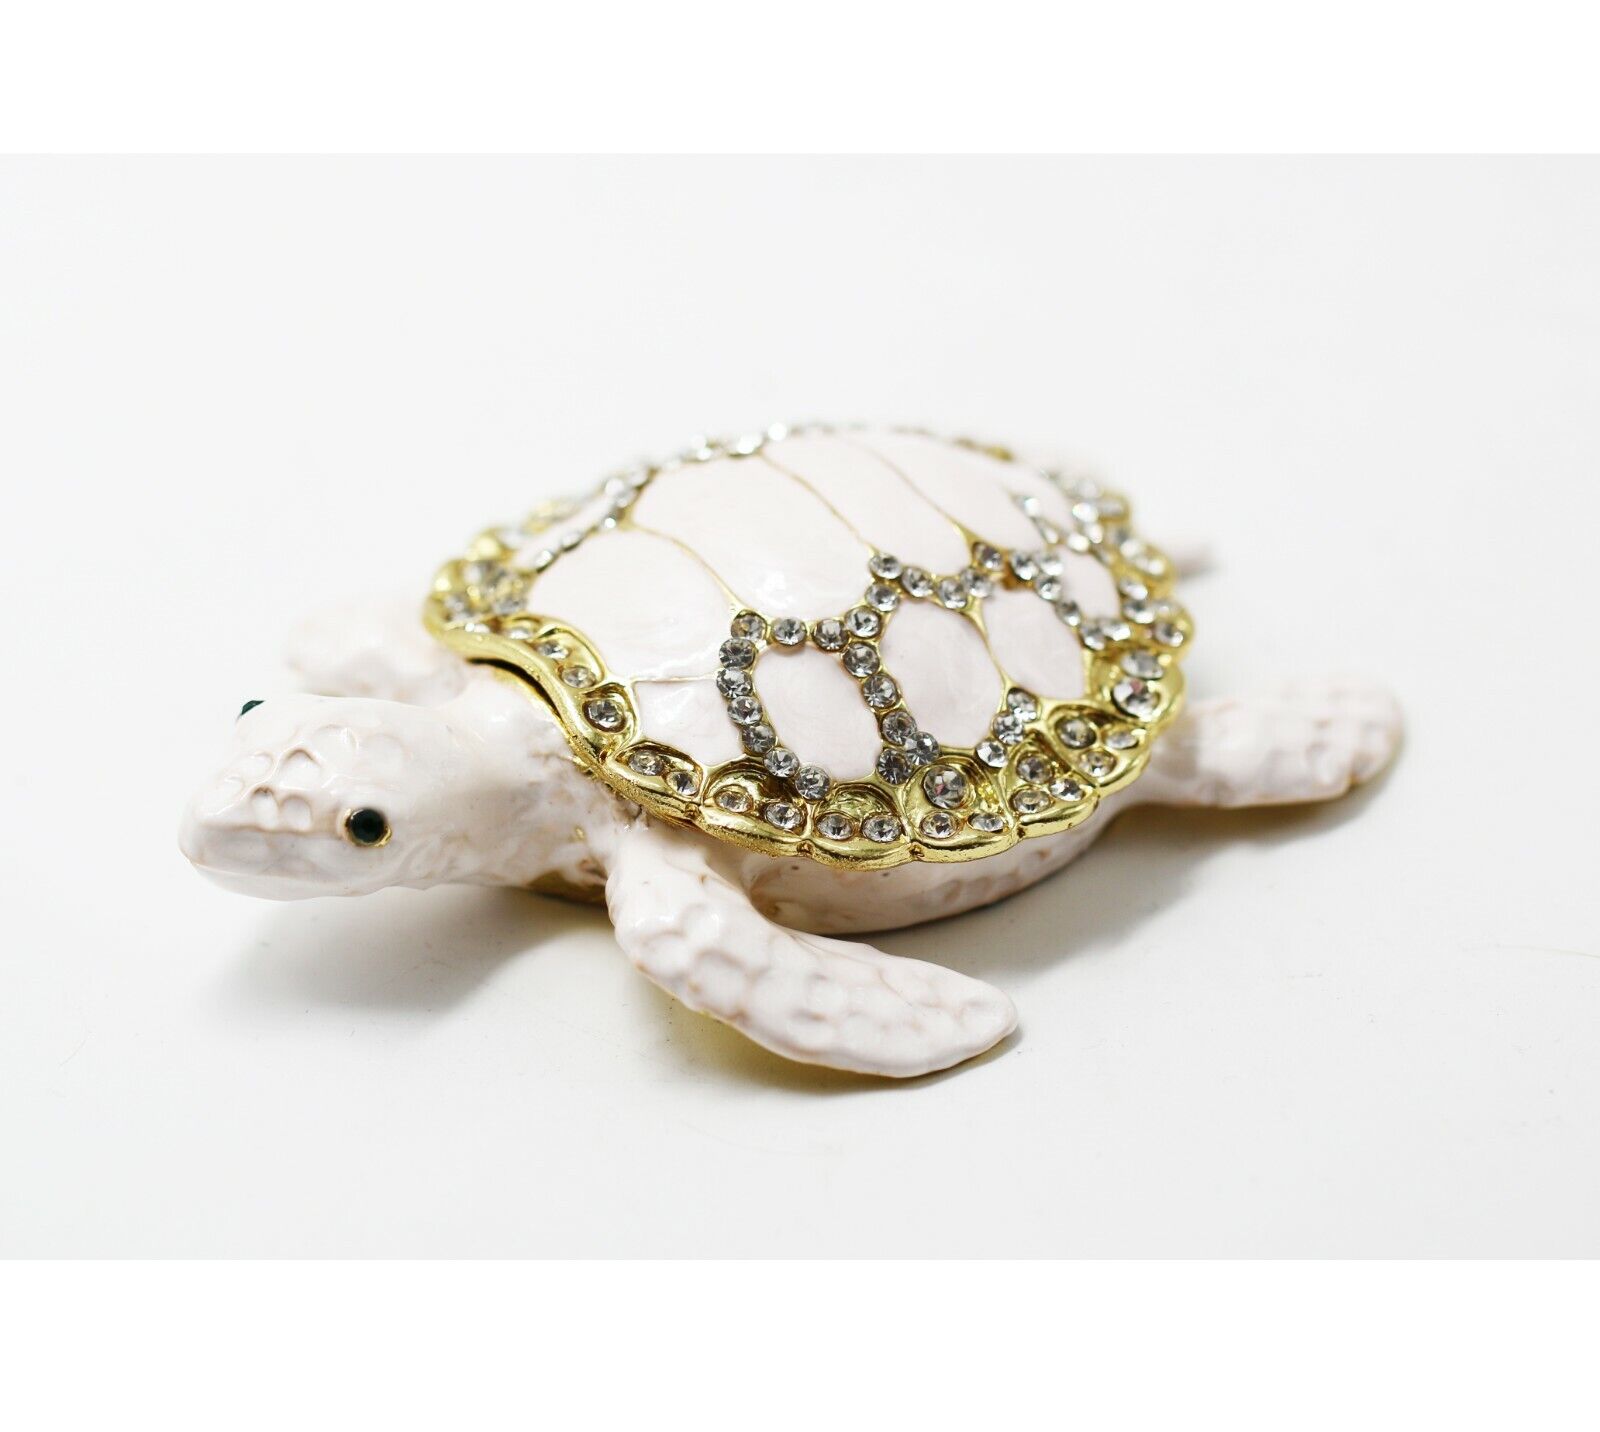 Bejeweled Enameled Animal Trinket Box/Figurine With Rhinestones-Big Sea Turtle